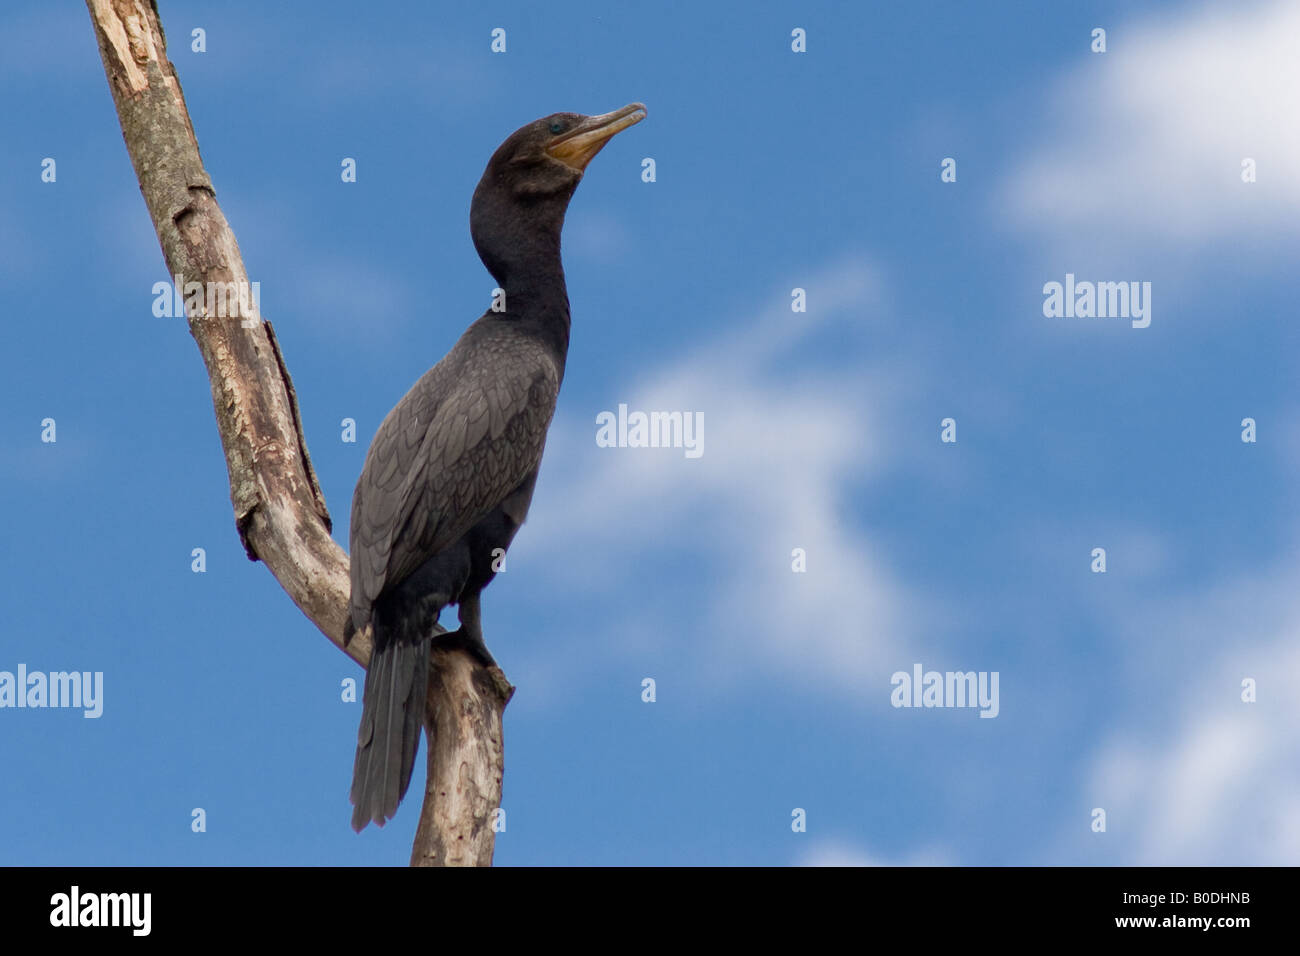 Photo d'un cormoran sur une branche contre un ciel bleu. Photo prise dans le Cerrado brésilien. Banque D'Images